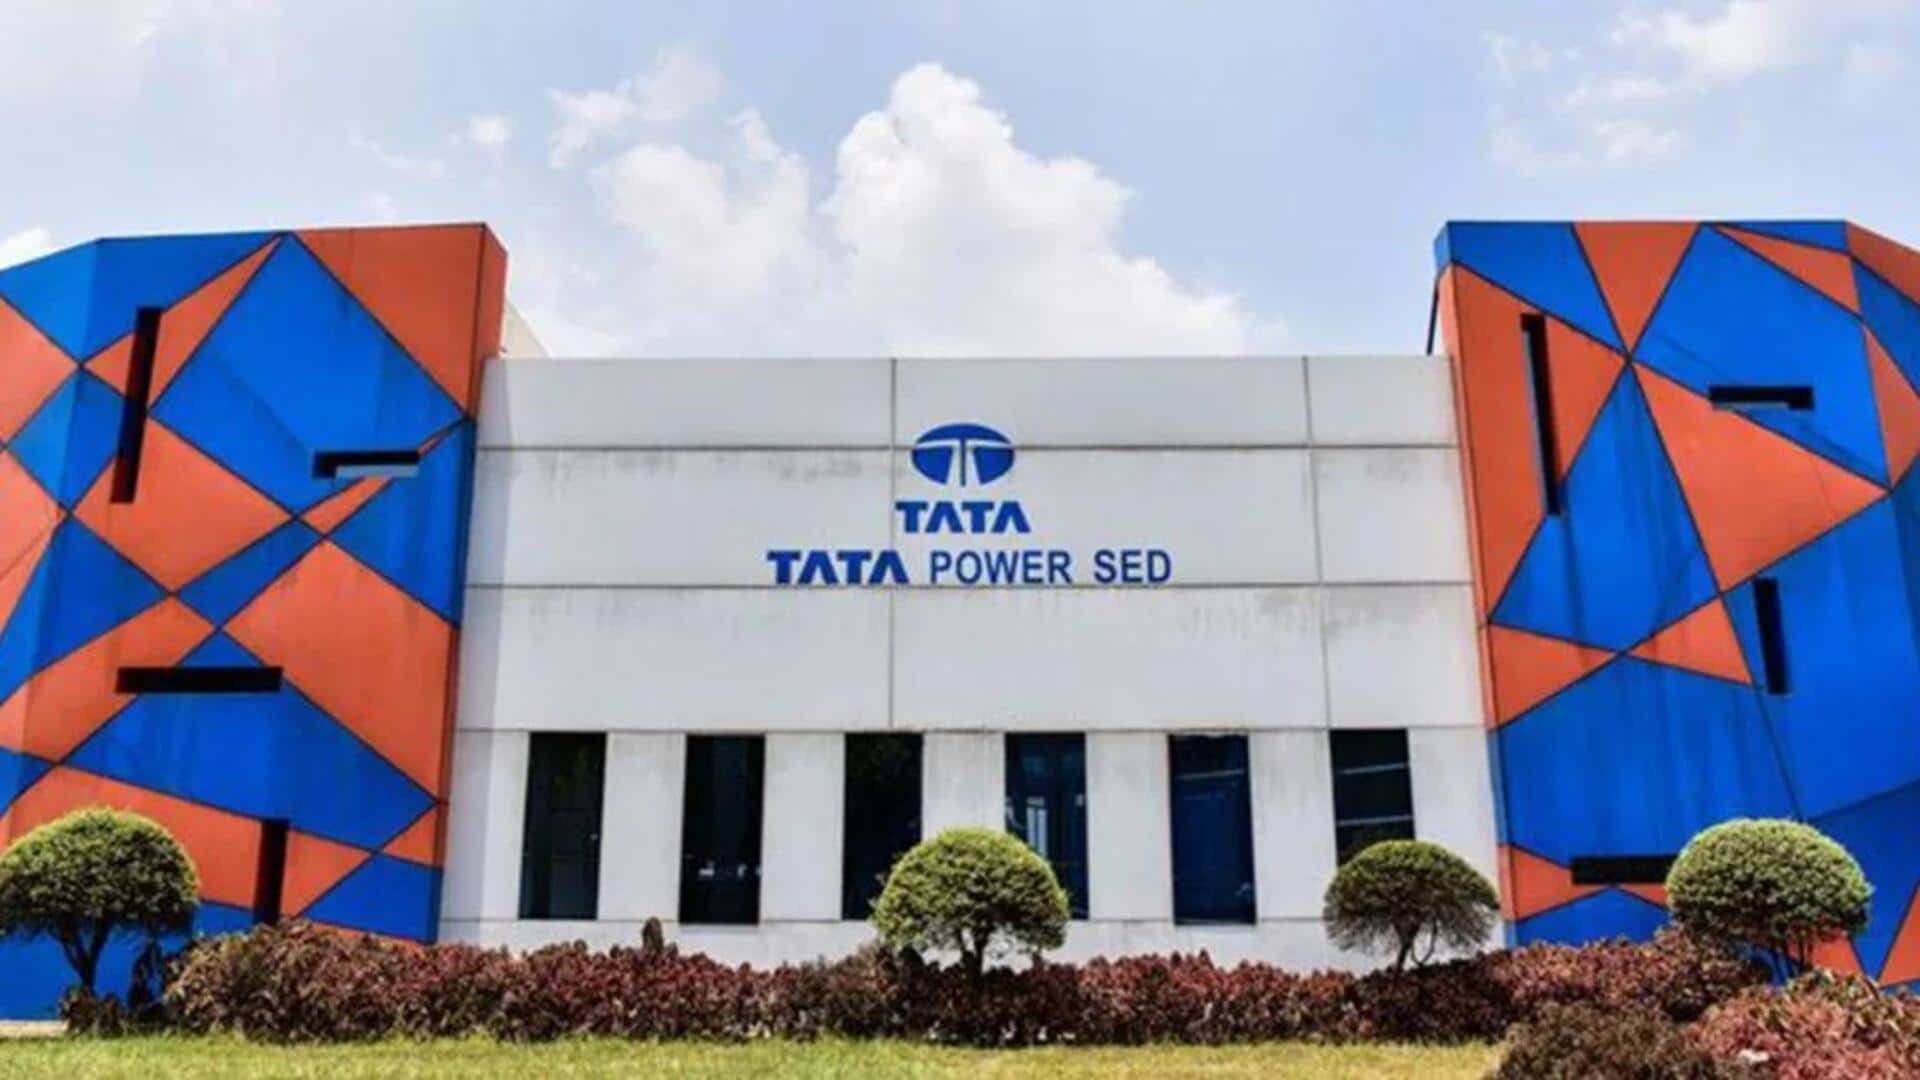 Tata Power's market cap surpasses Rs. 1 lakh crore